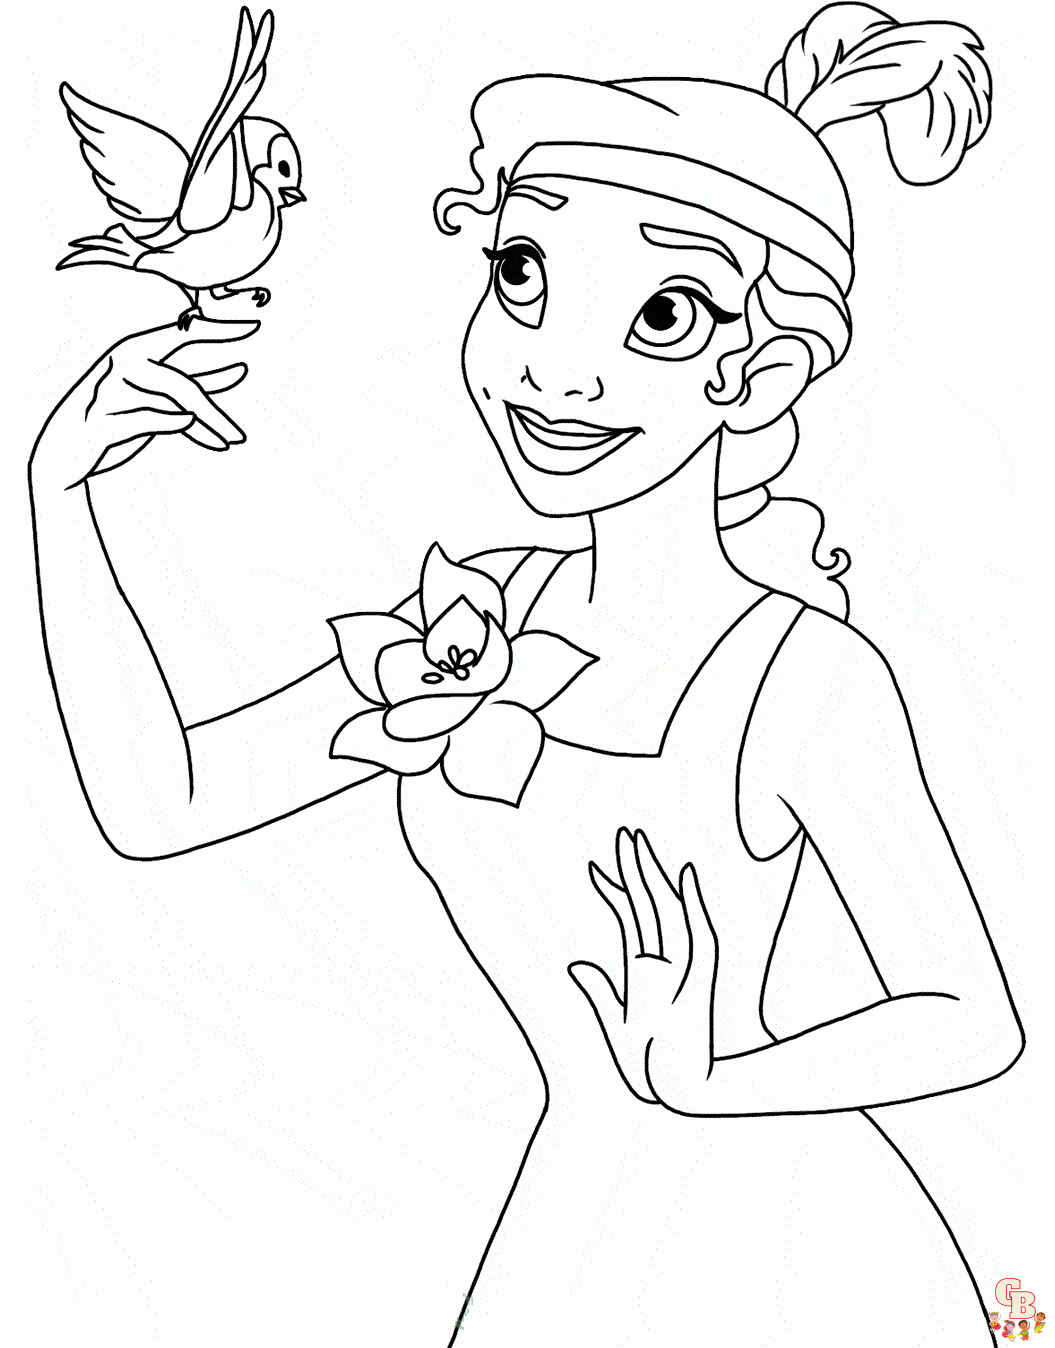 Dibujos para colorear de la princesa Tiana y el sapo 2